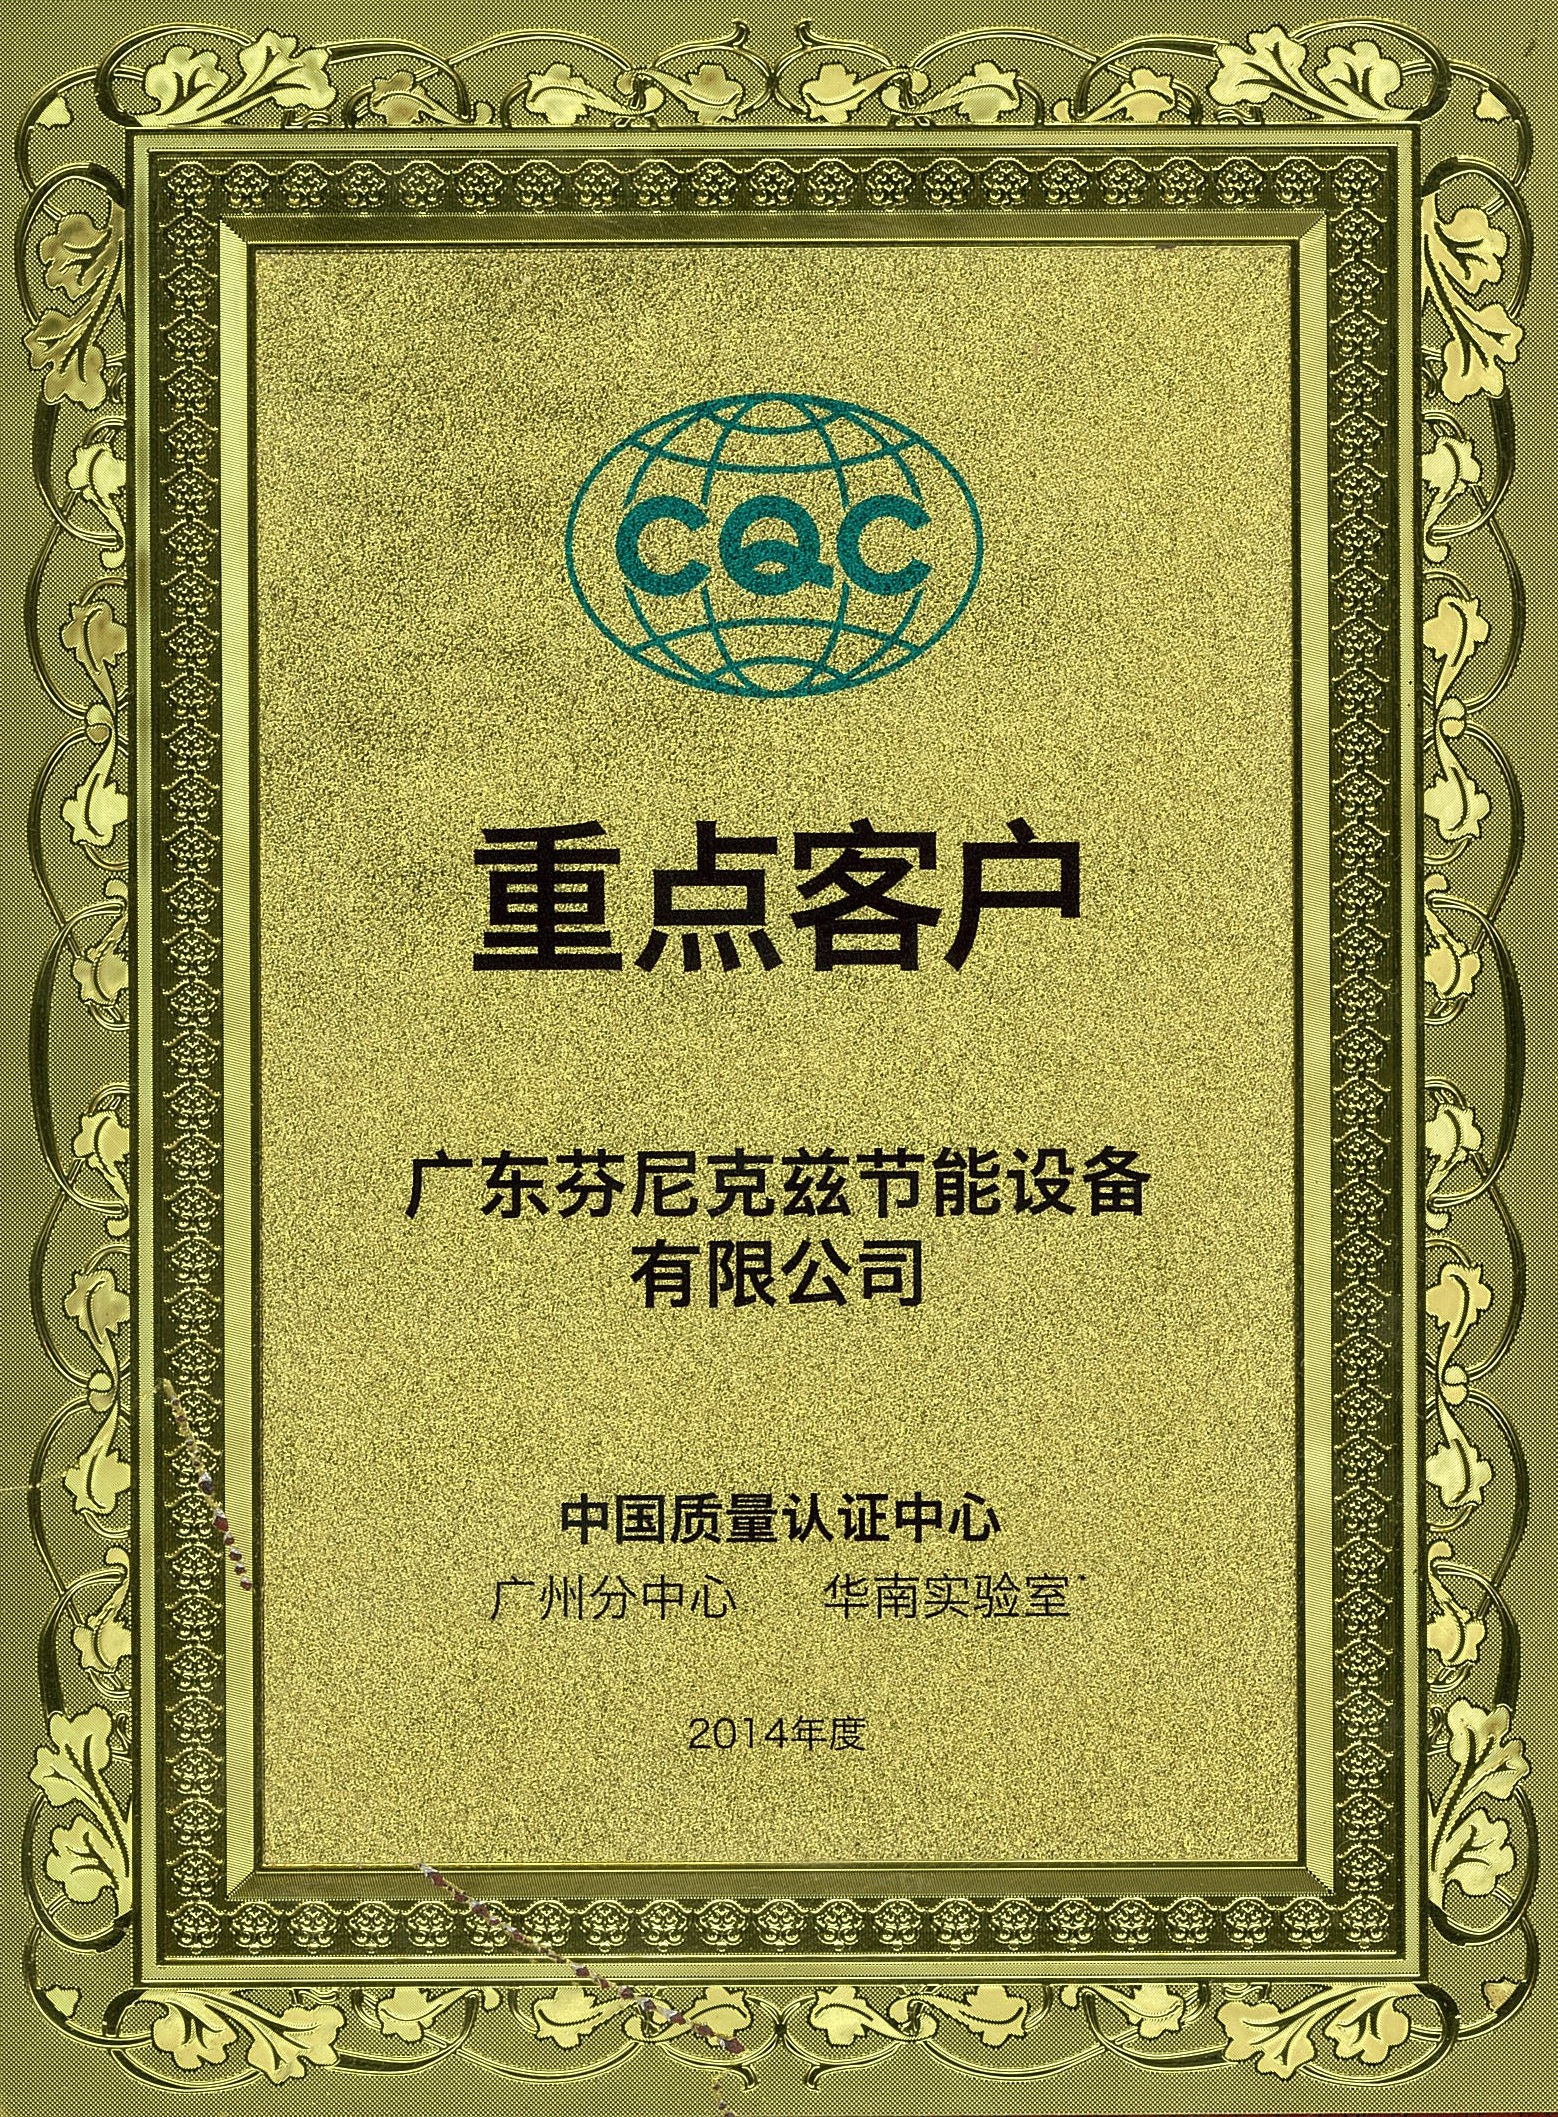 2014中国质量认证中心广州分中心重点客户.jpg